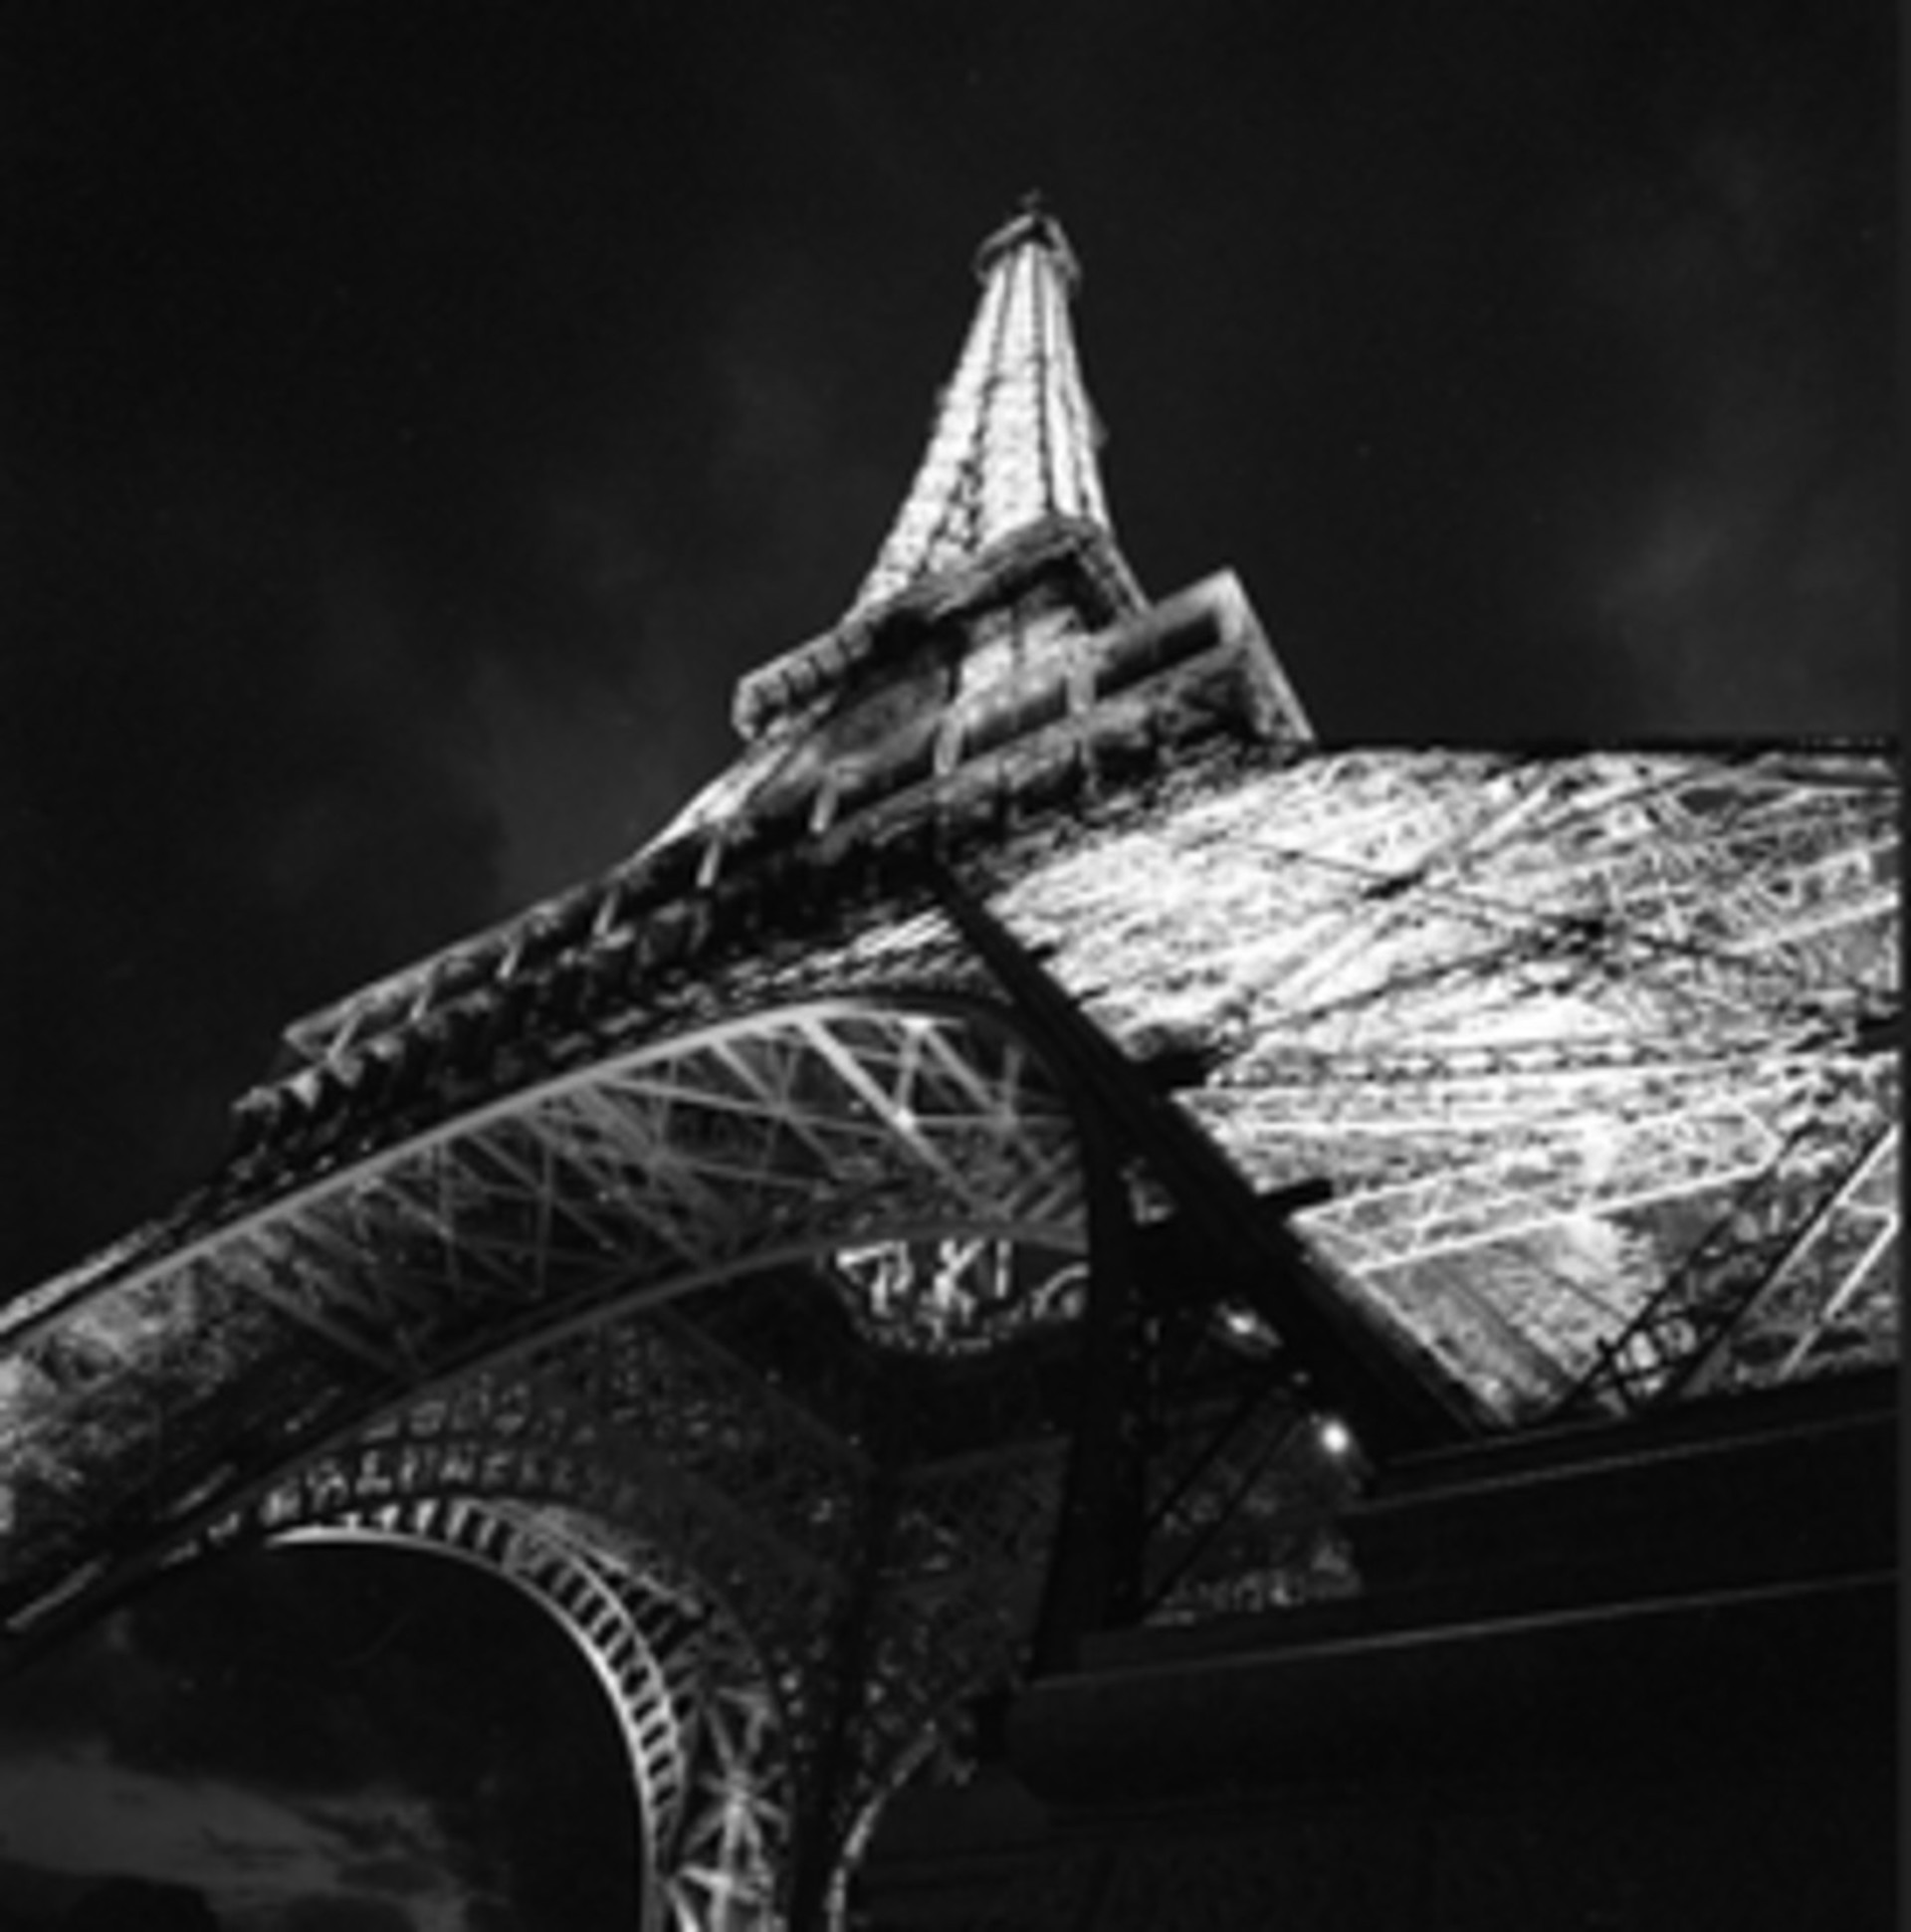 Magnifique Eiffel by Mike McMullen